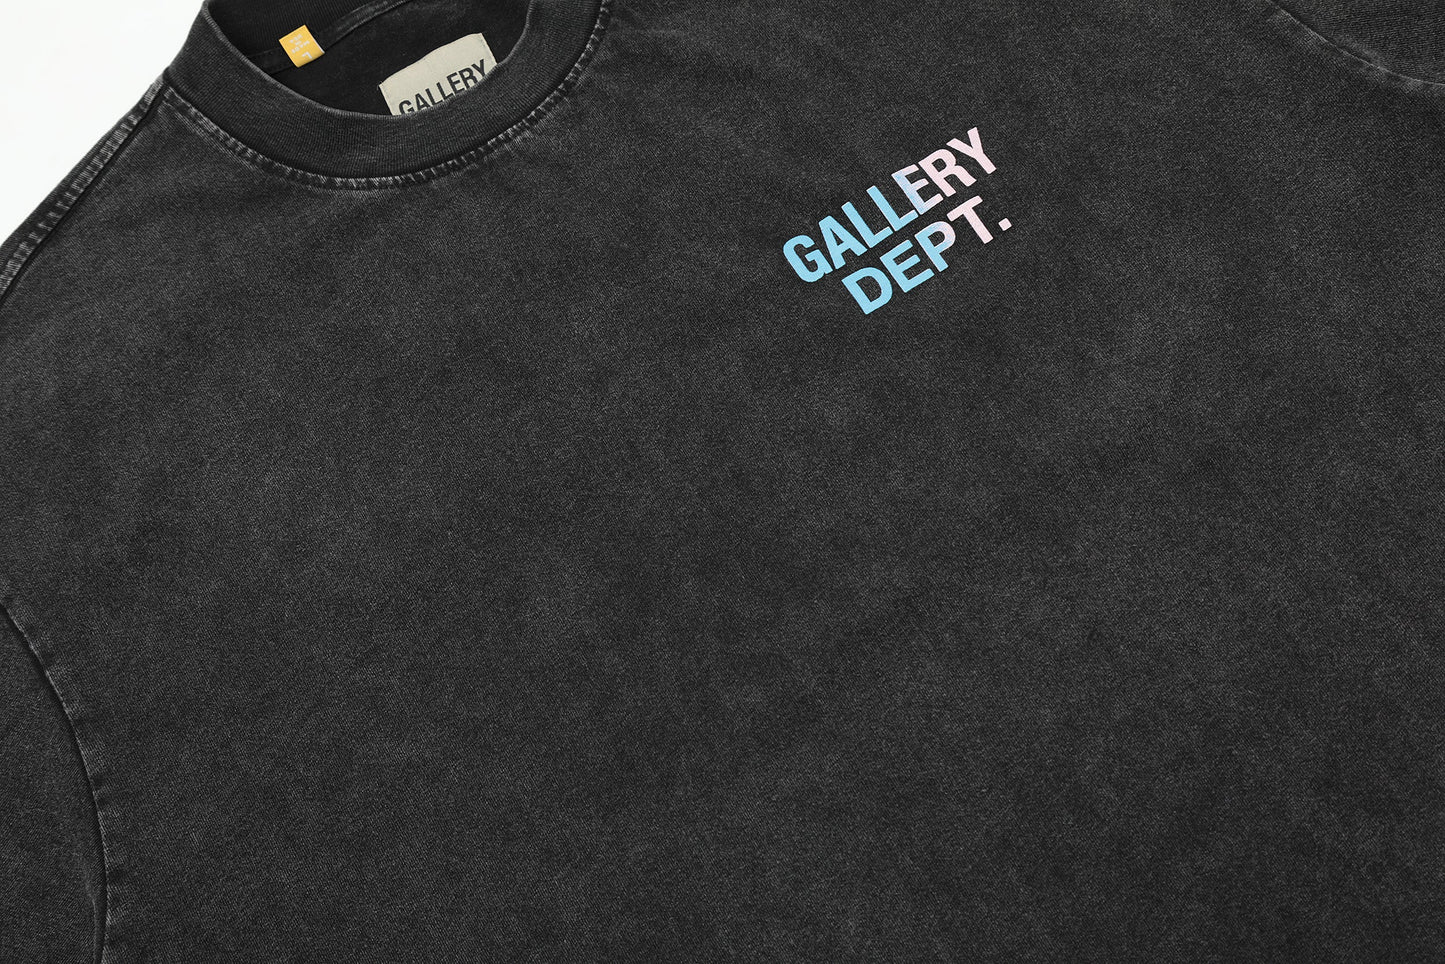 GALLERY DEPT 2024 New T-shirt  D49